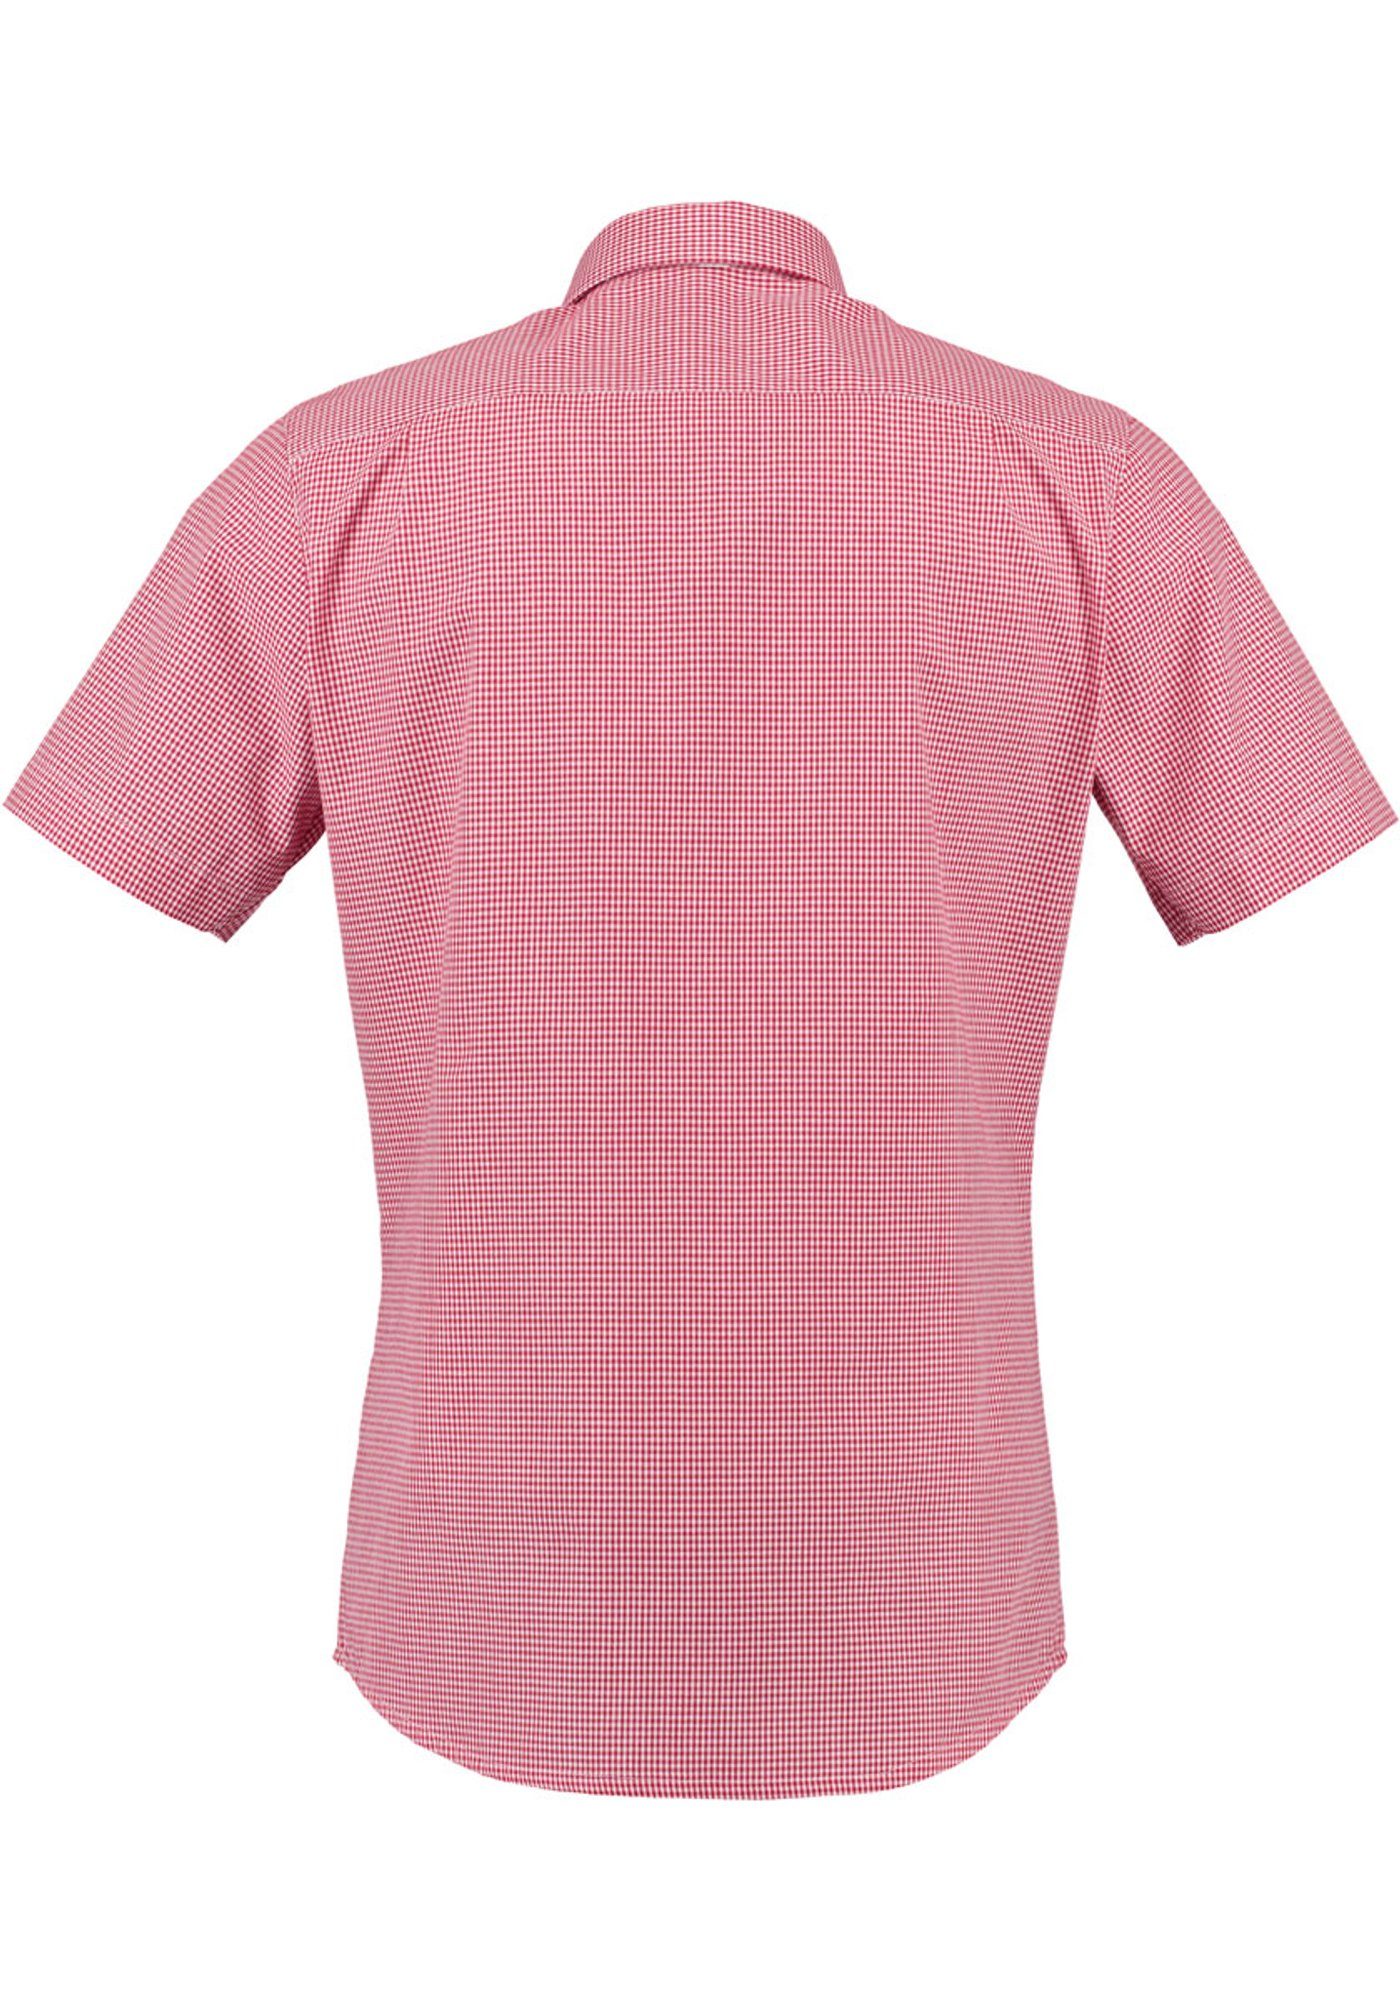 Knopfleiste Edelweiß-Stickerei Trachtenhemd Kurzarmhemd mit Paspeltasche, OS-Trachten auf hochrot der Weonys